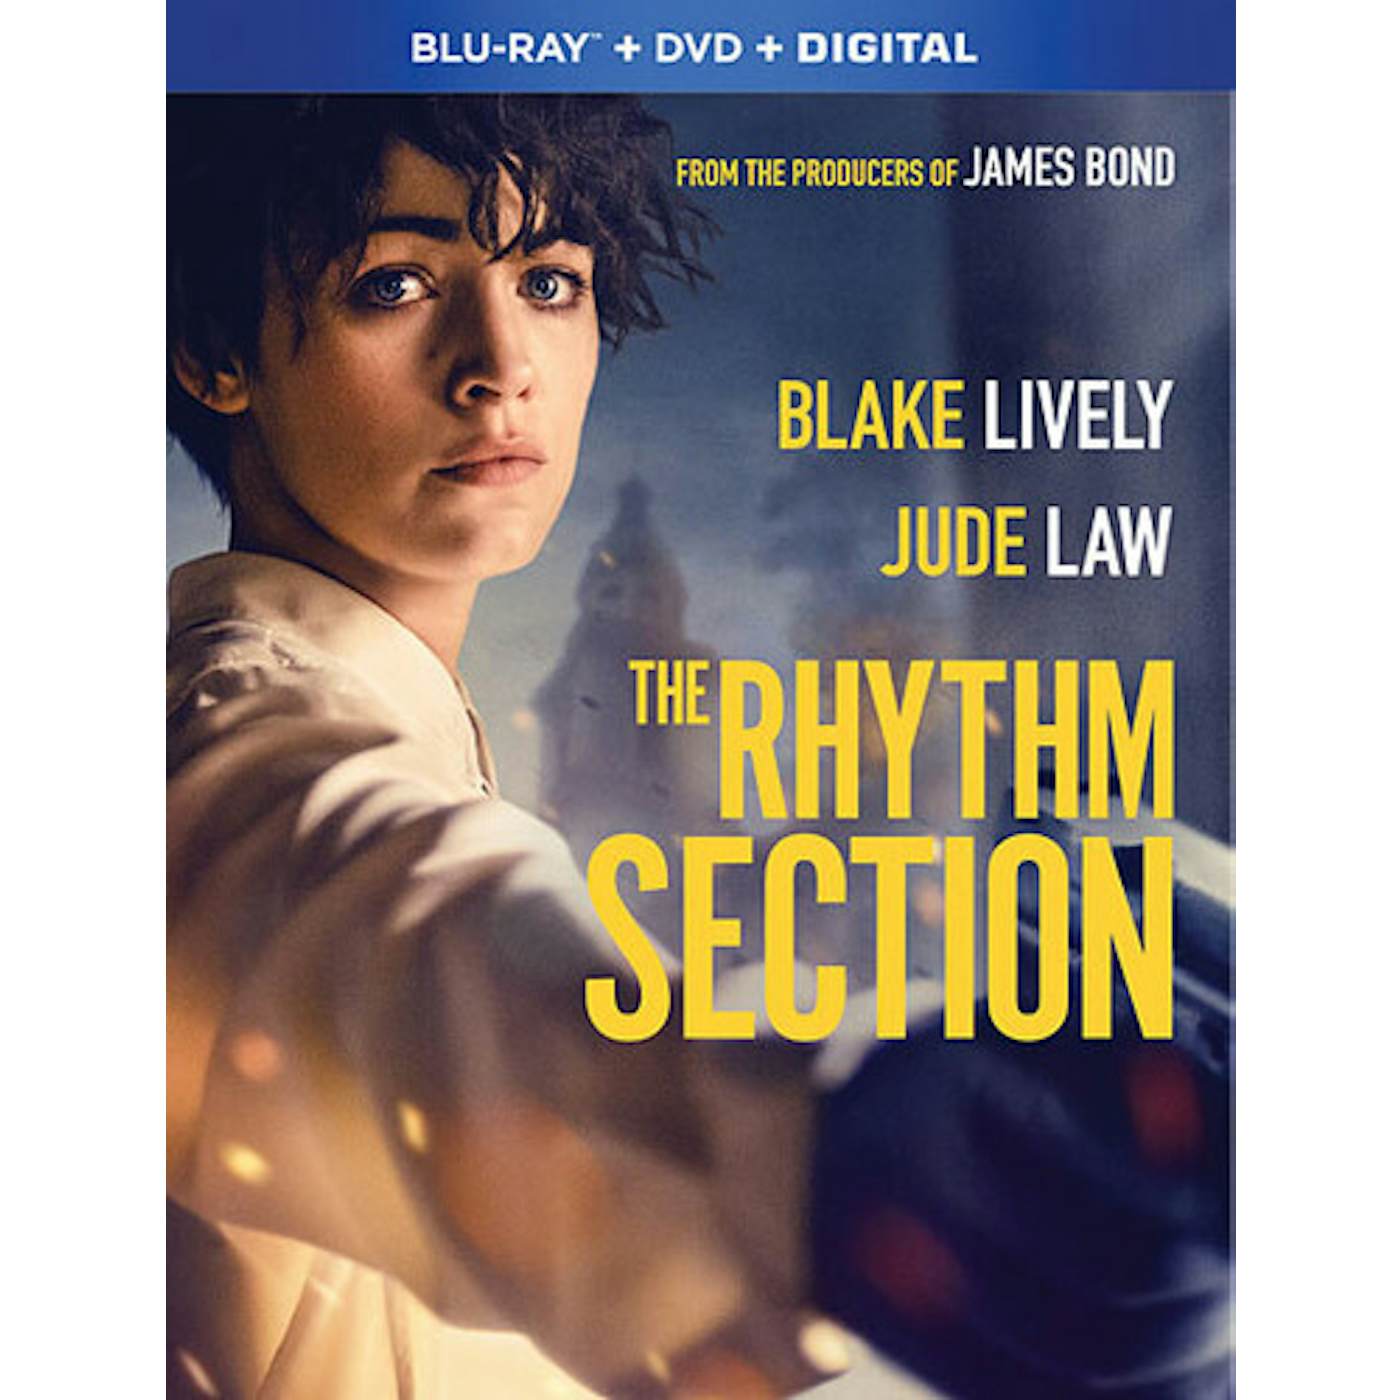 RHYTHM SECTION Blu-ray